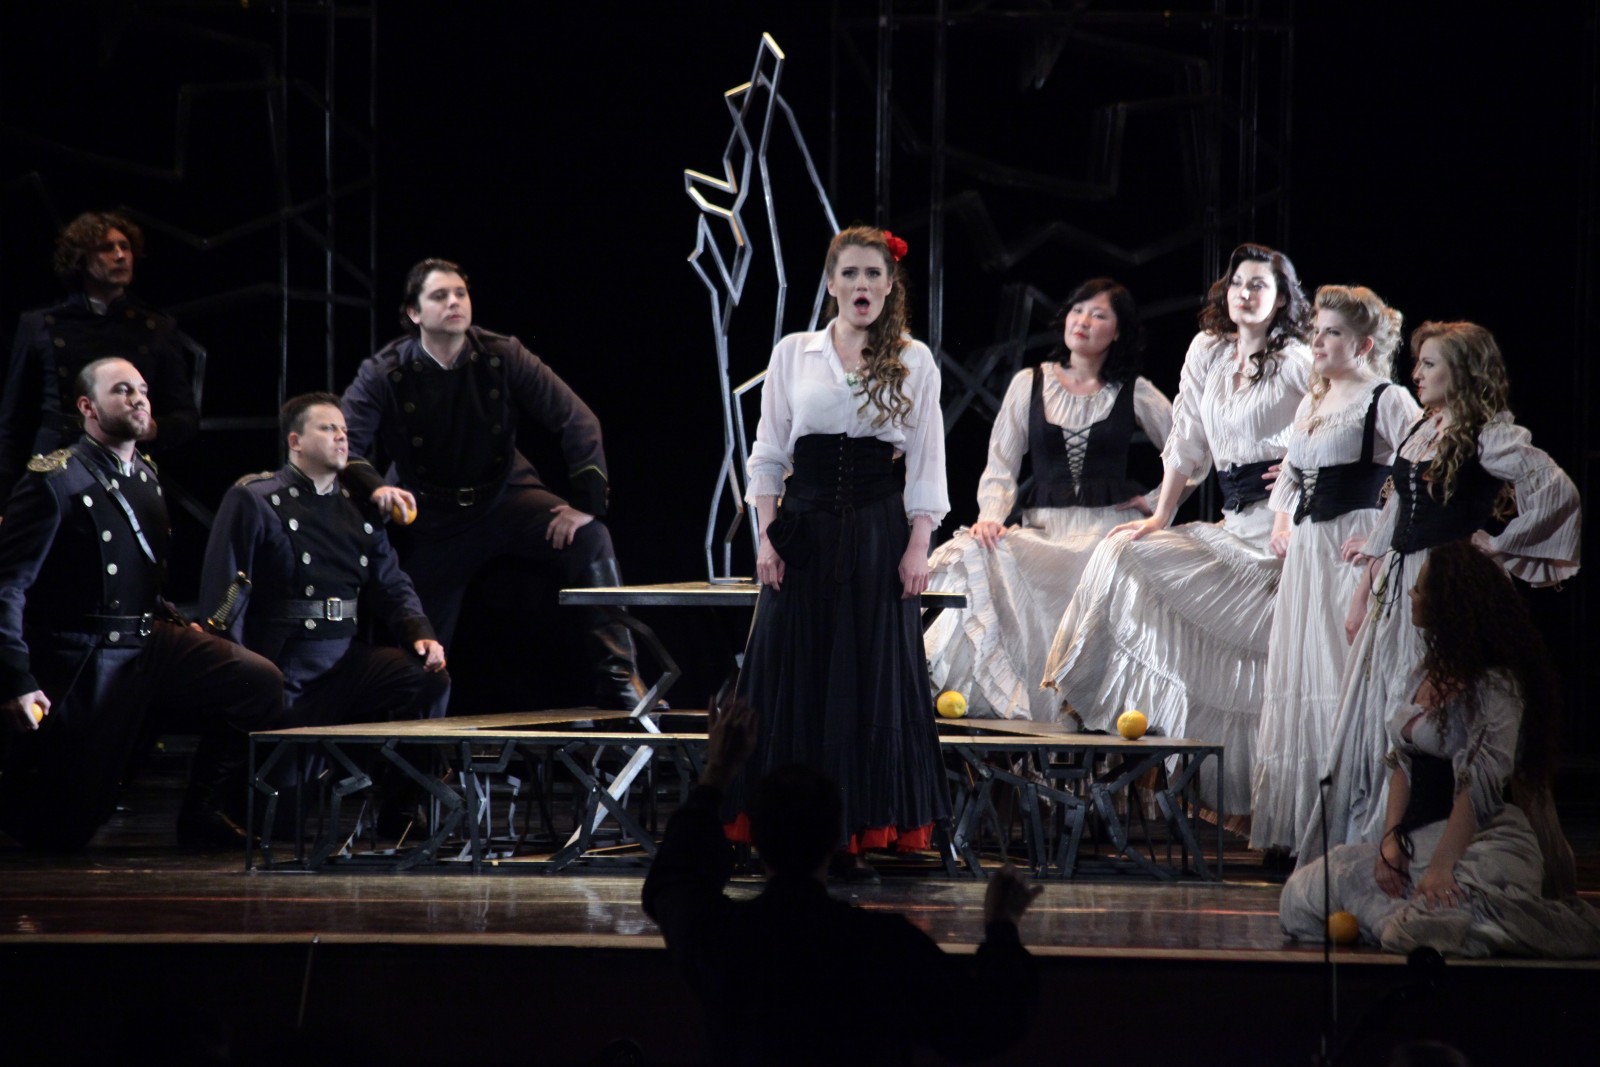 Национальный проект «Культура»: опера «Кармен» откроет VII Международный фестиваль Мстислава Ростроповича